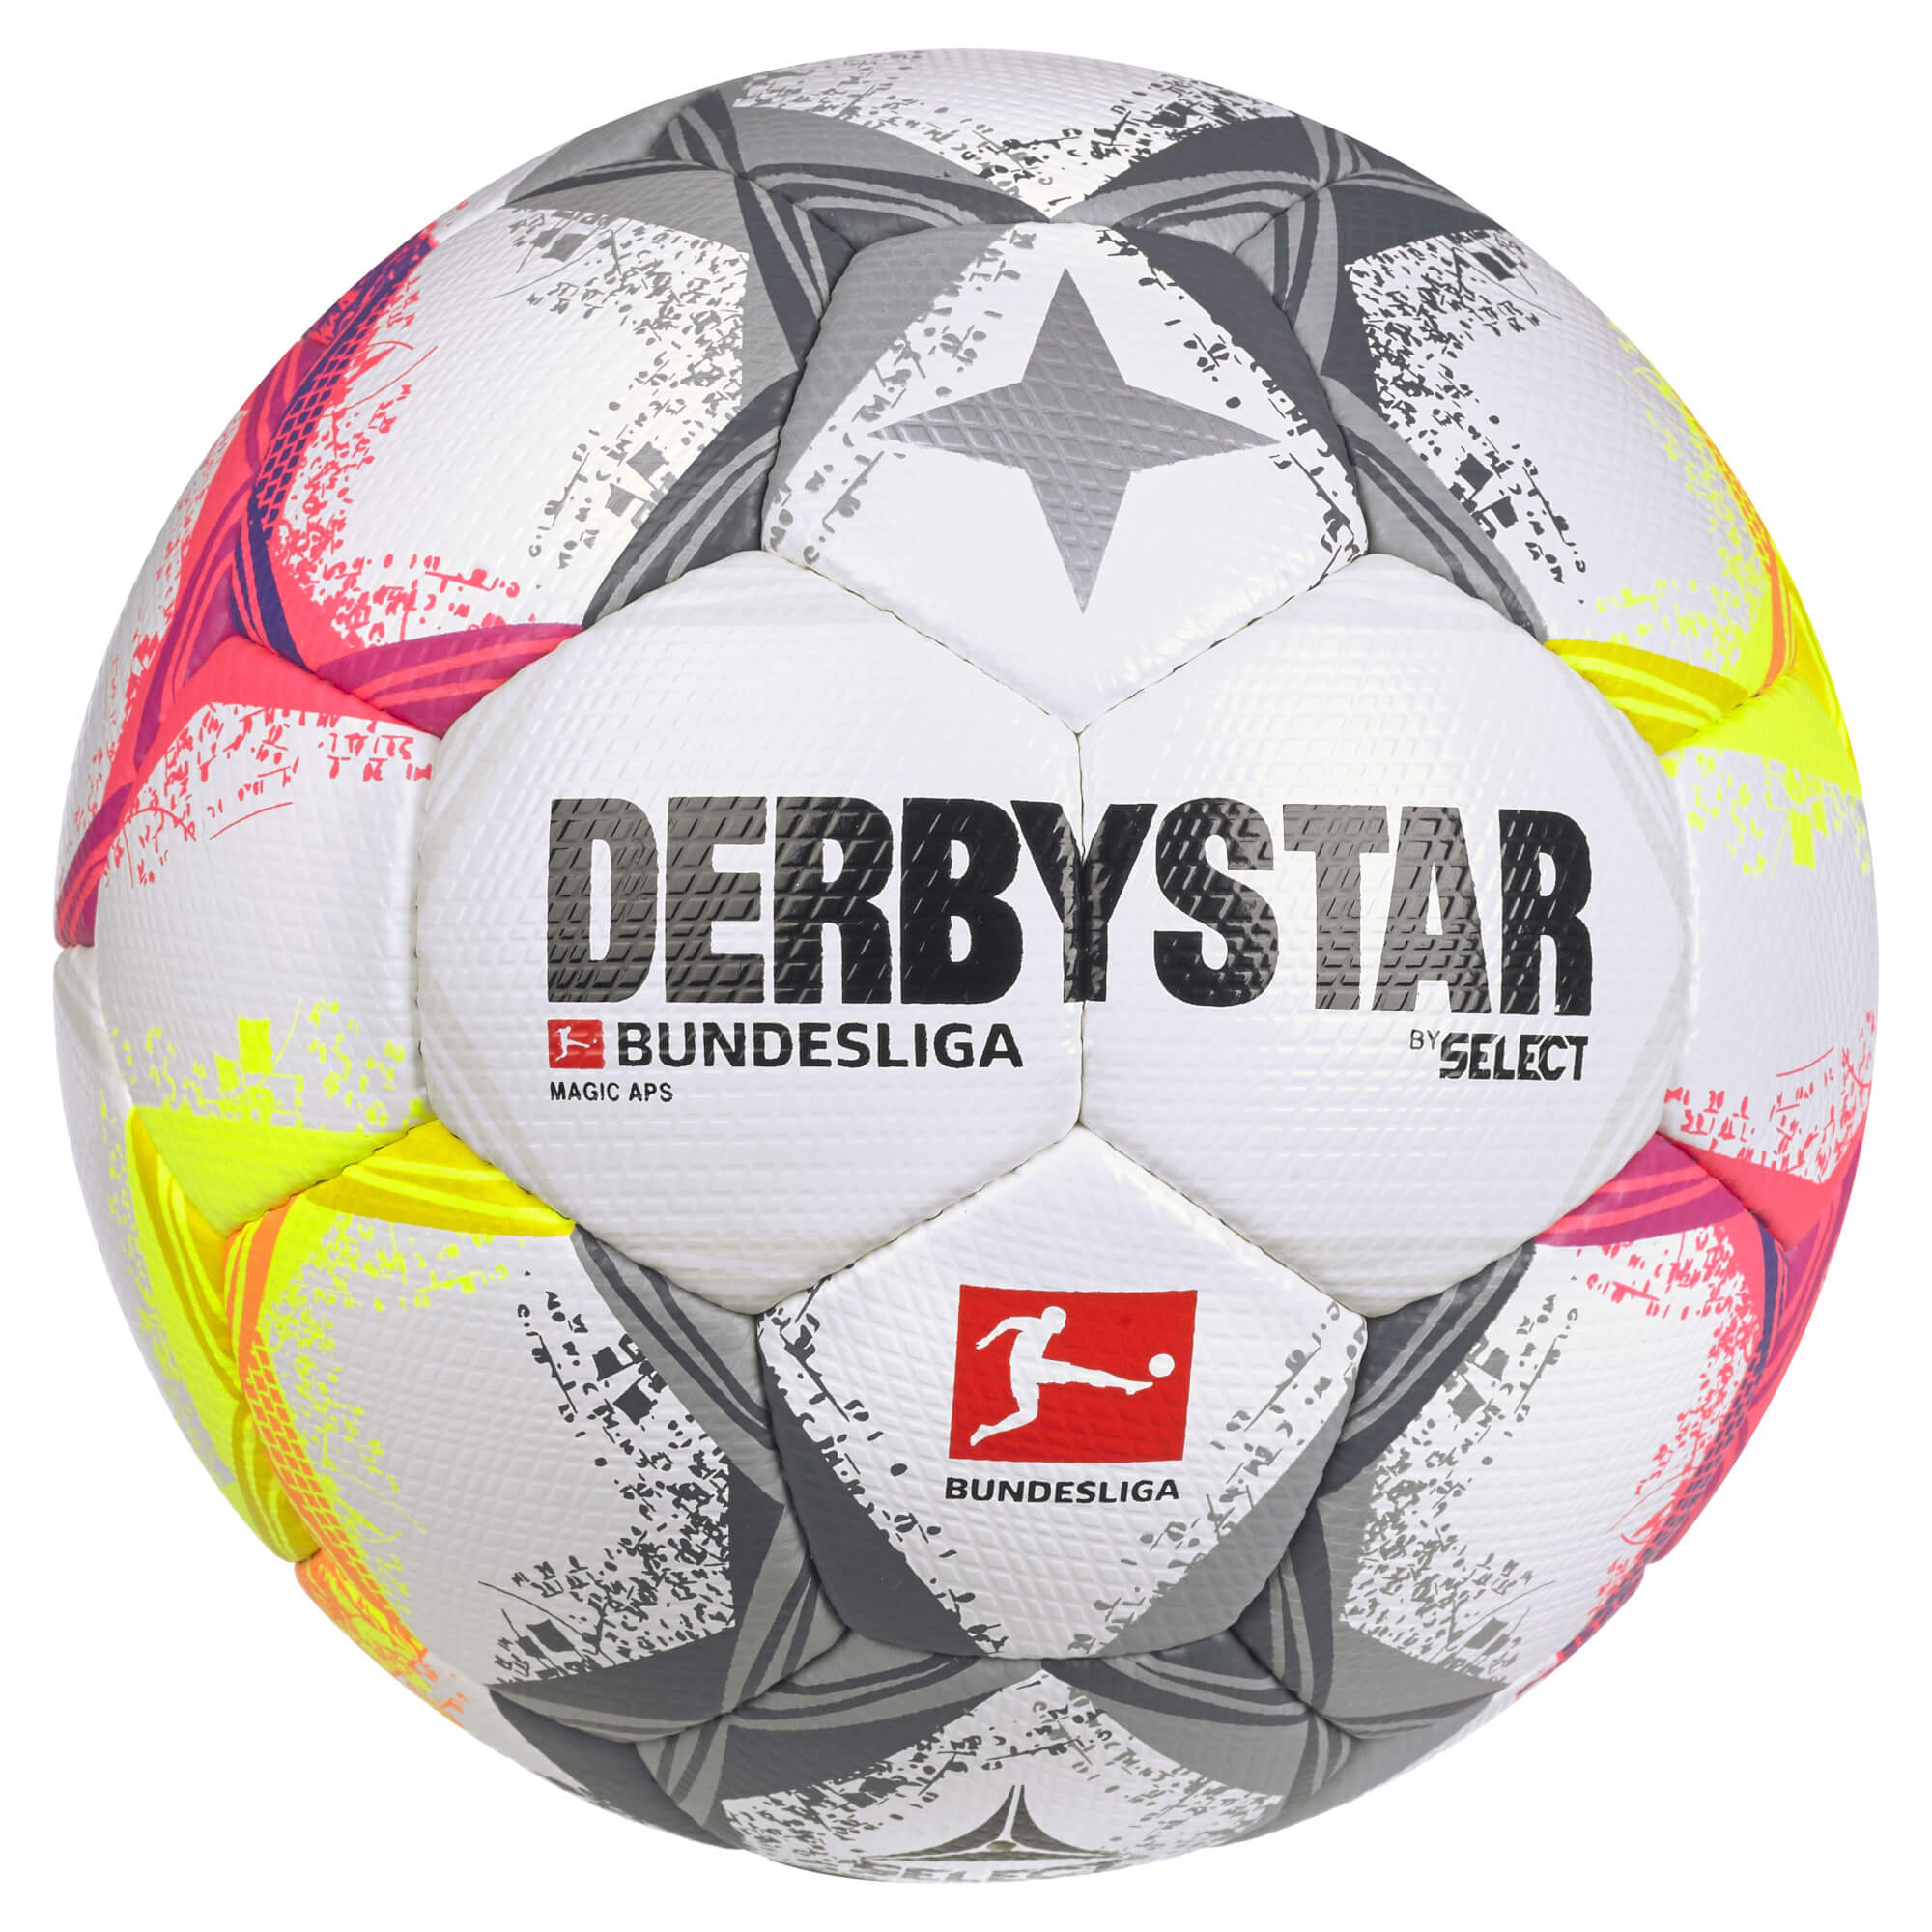 Derbystar Spielball Bundesliga Magic APS v22